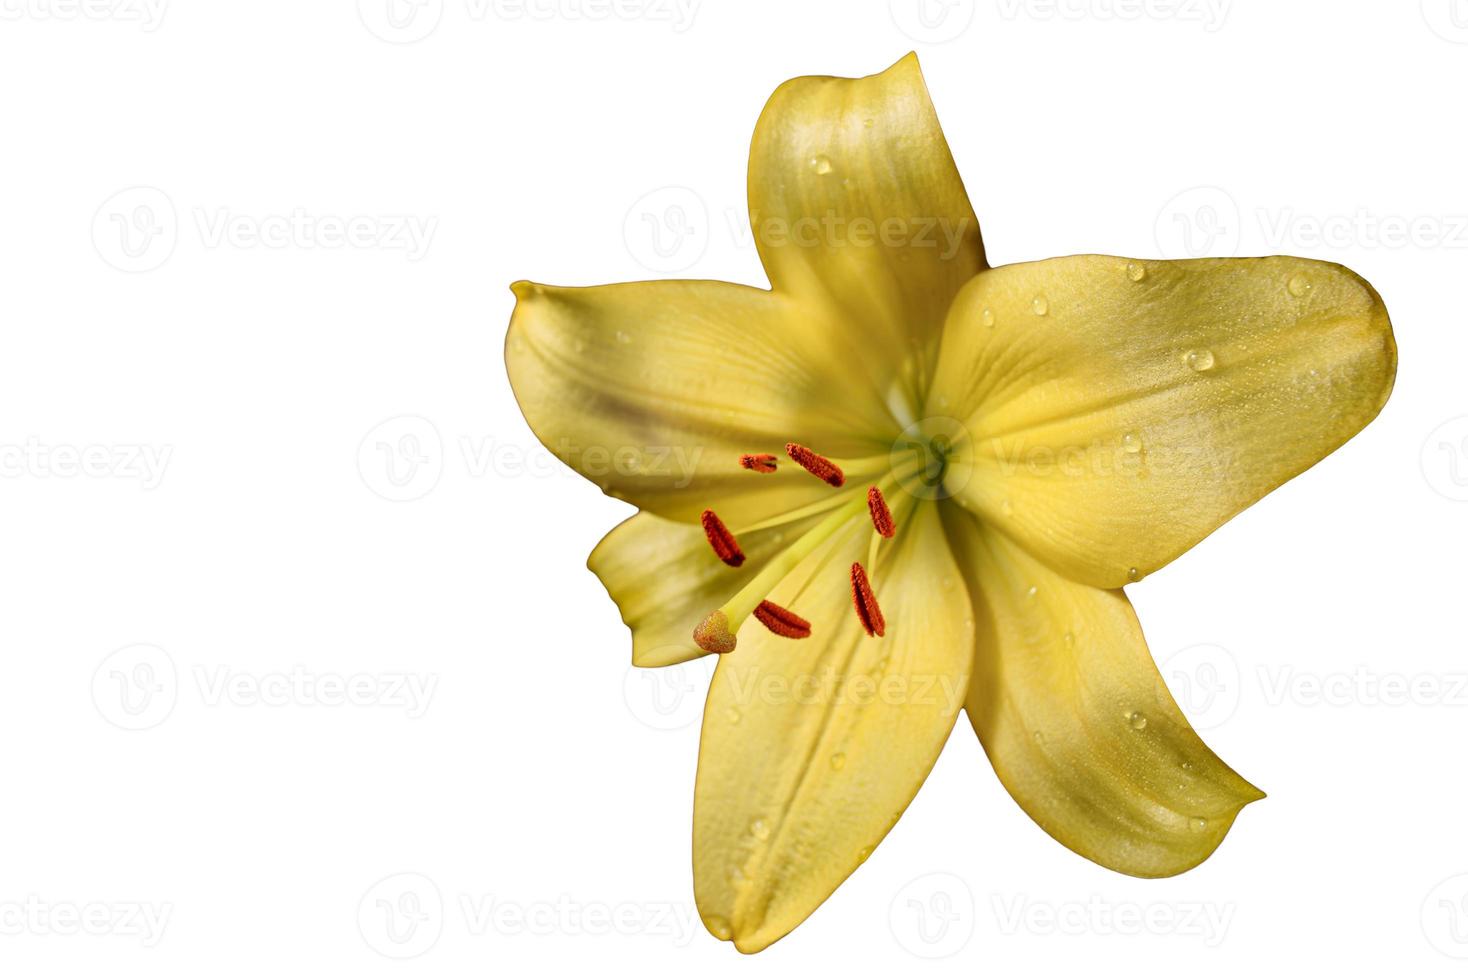 fiore di giglio giallo isolato su uno sfondo bianco. trama di fiori di giglio giallo con gocce d'acqua. macrofotografia floreale. foto